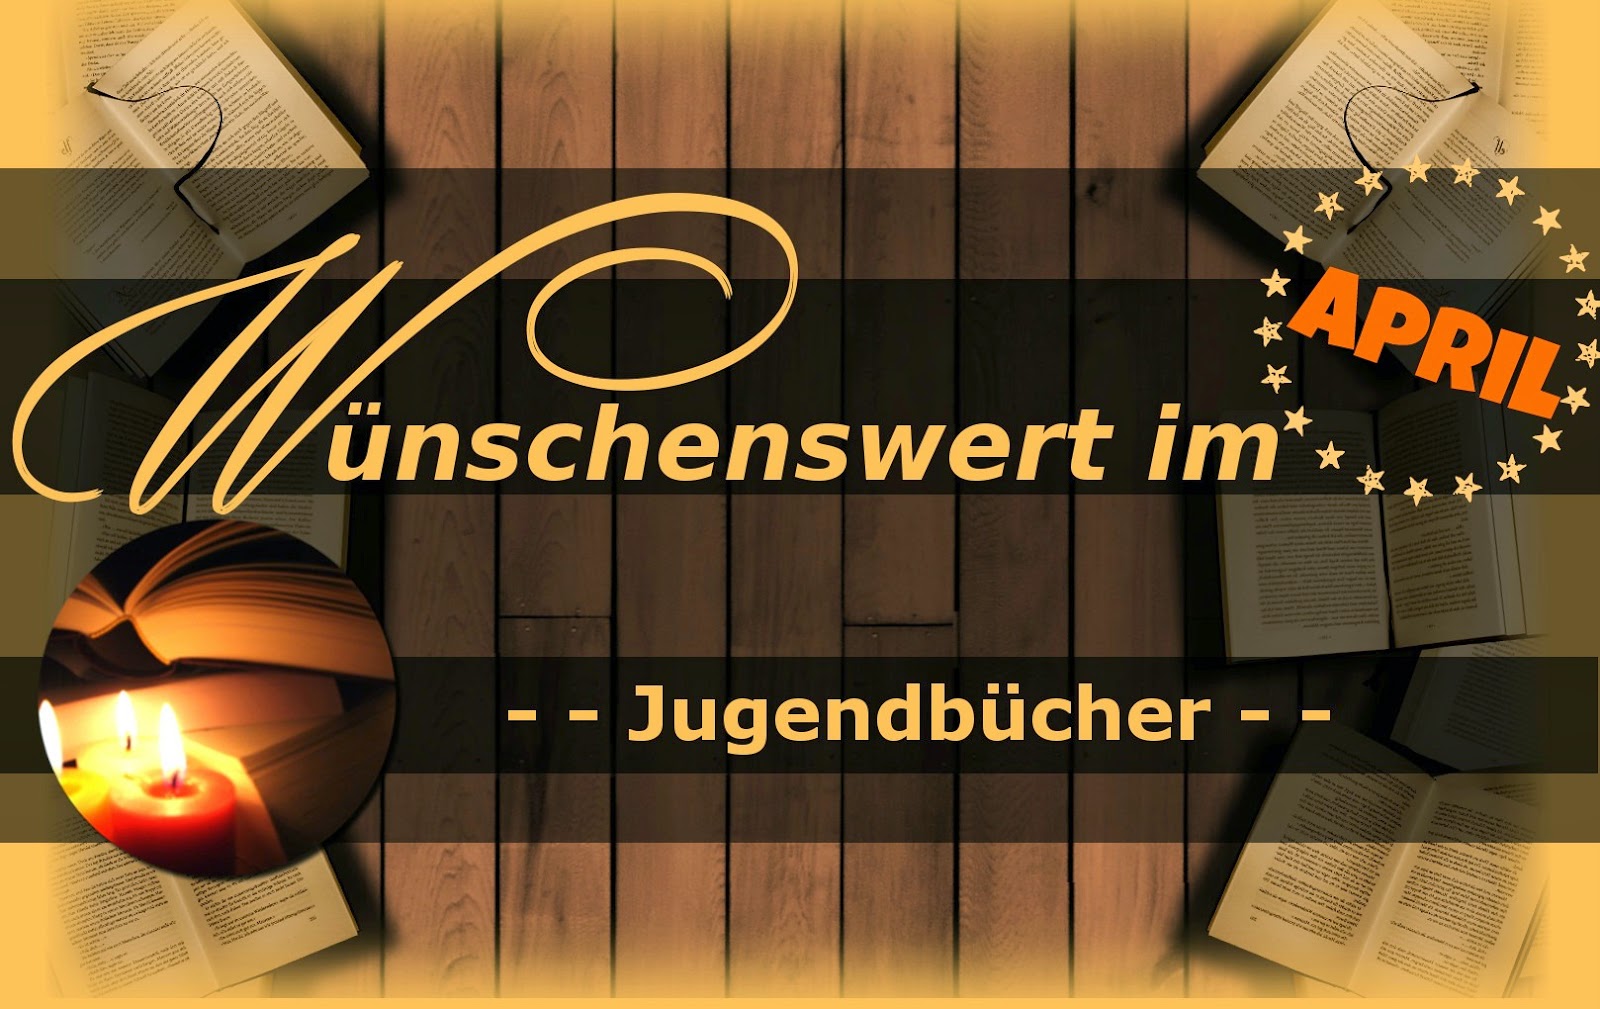 http://sarahsbuecherwelt.blogspot.com/2014/03/wunschenswert-im-april.html